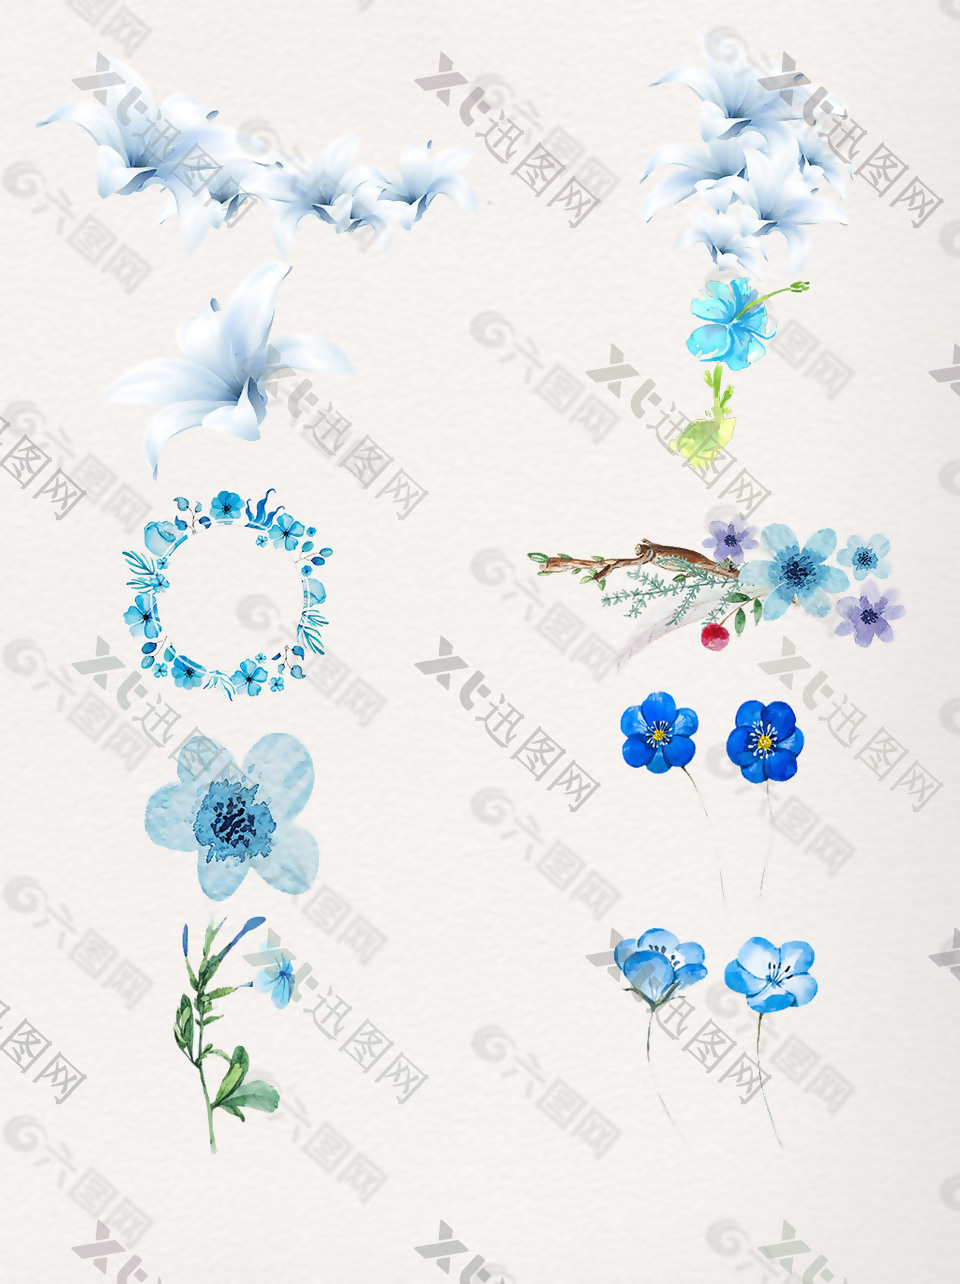 水彩花卉矢量素材蓝色风格